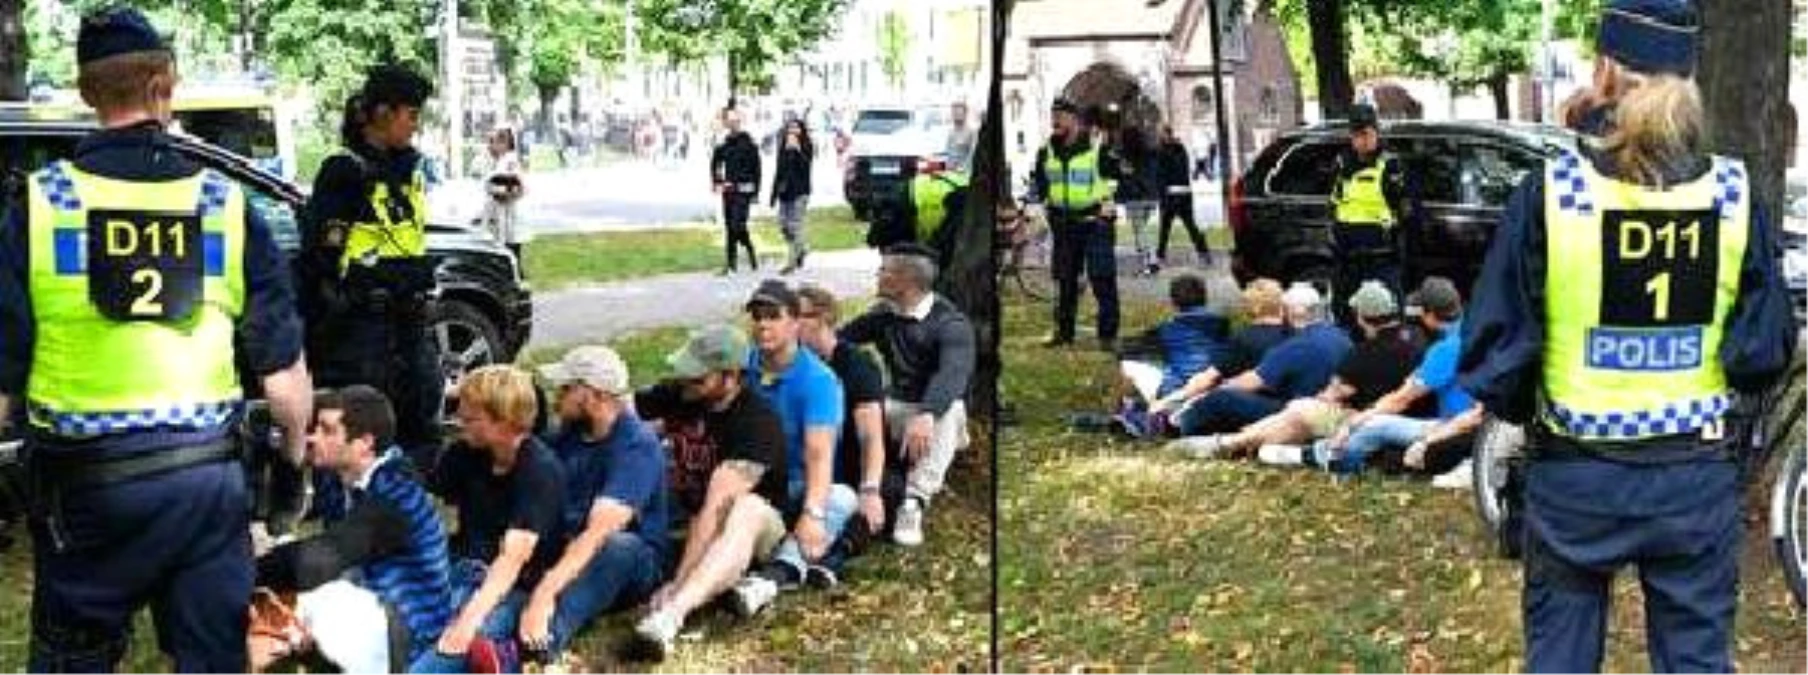 Nazi Yanlıları Stockholm Pride Onur Yürüyüşüne Engel Olmaya Çalıştı